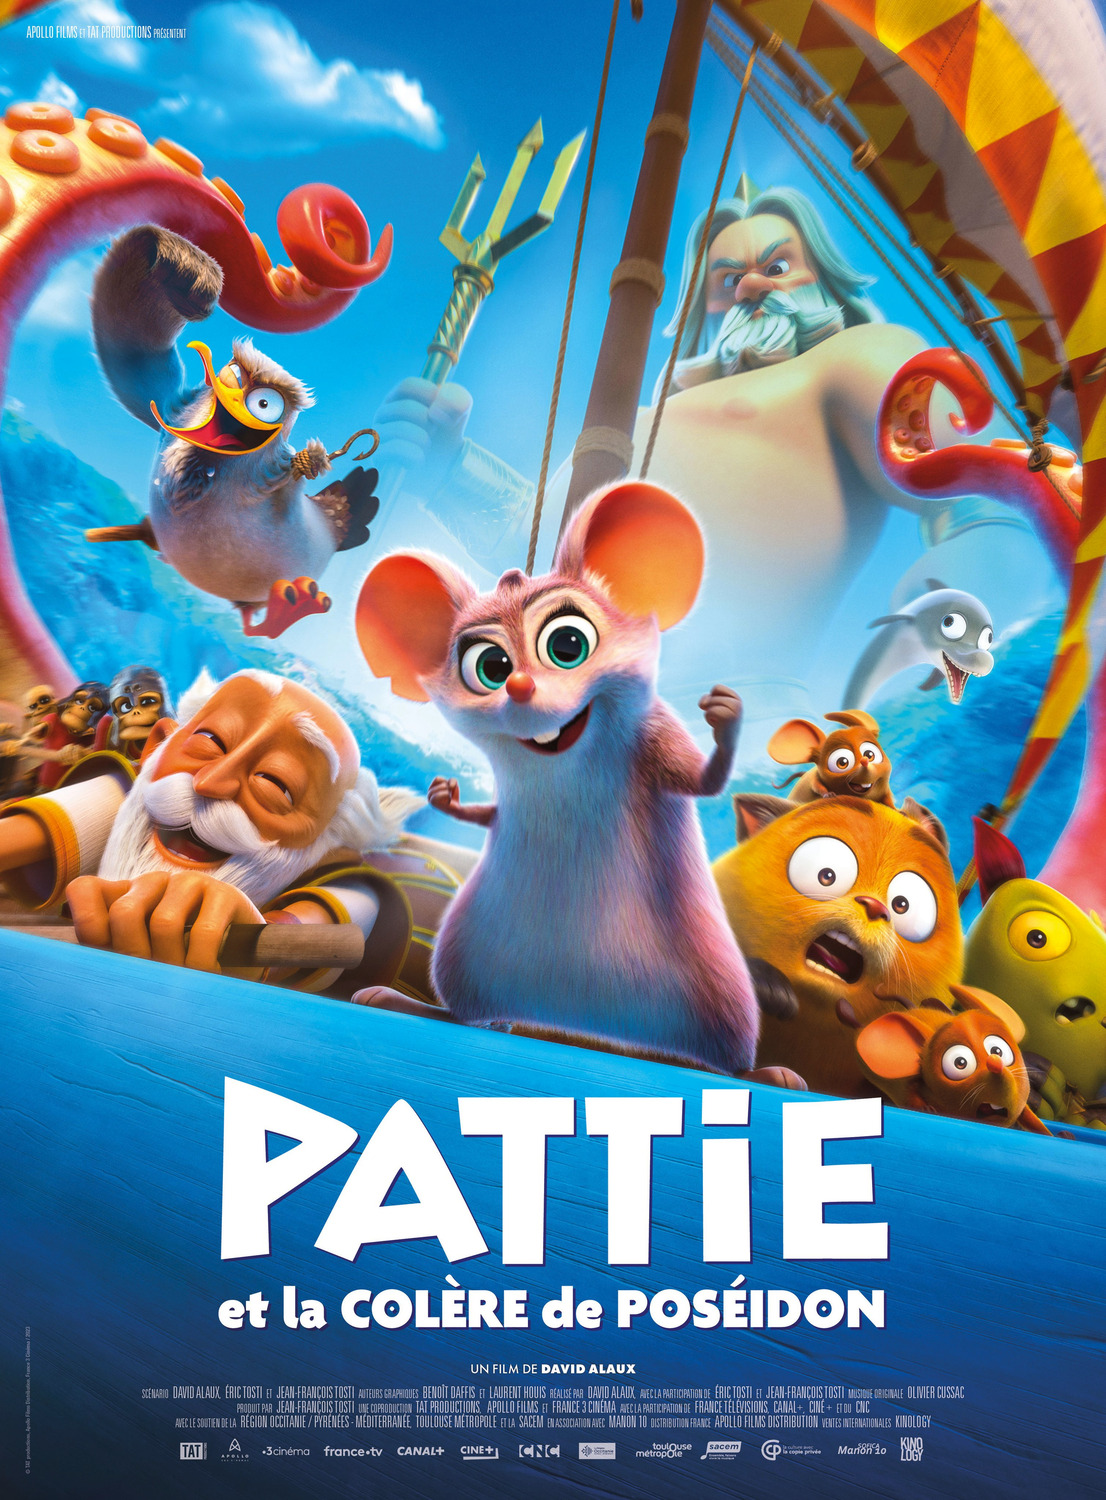 Extra Large Movie Poster Image for Pattie et la colère de Poséidon 